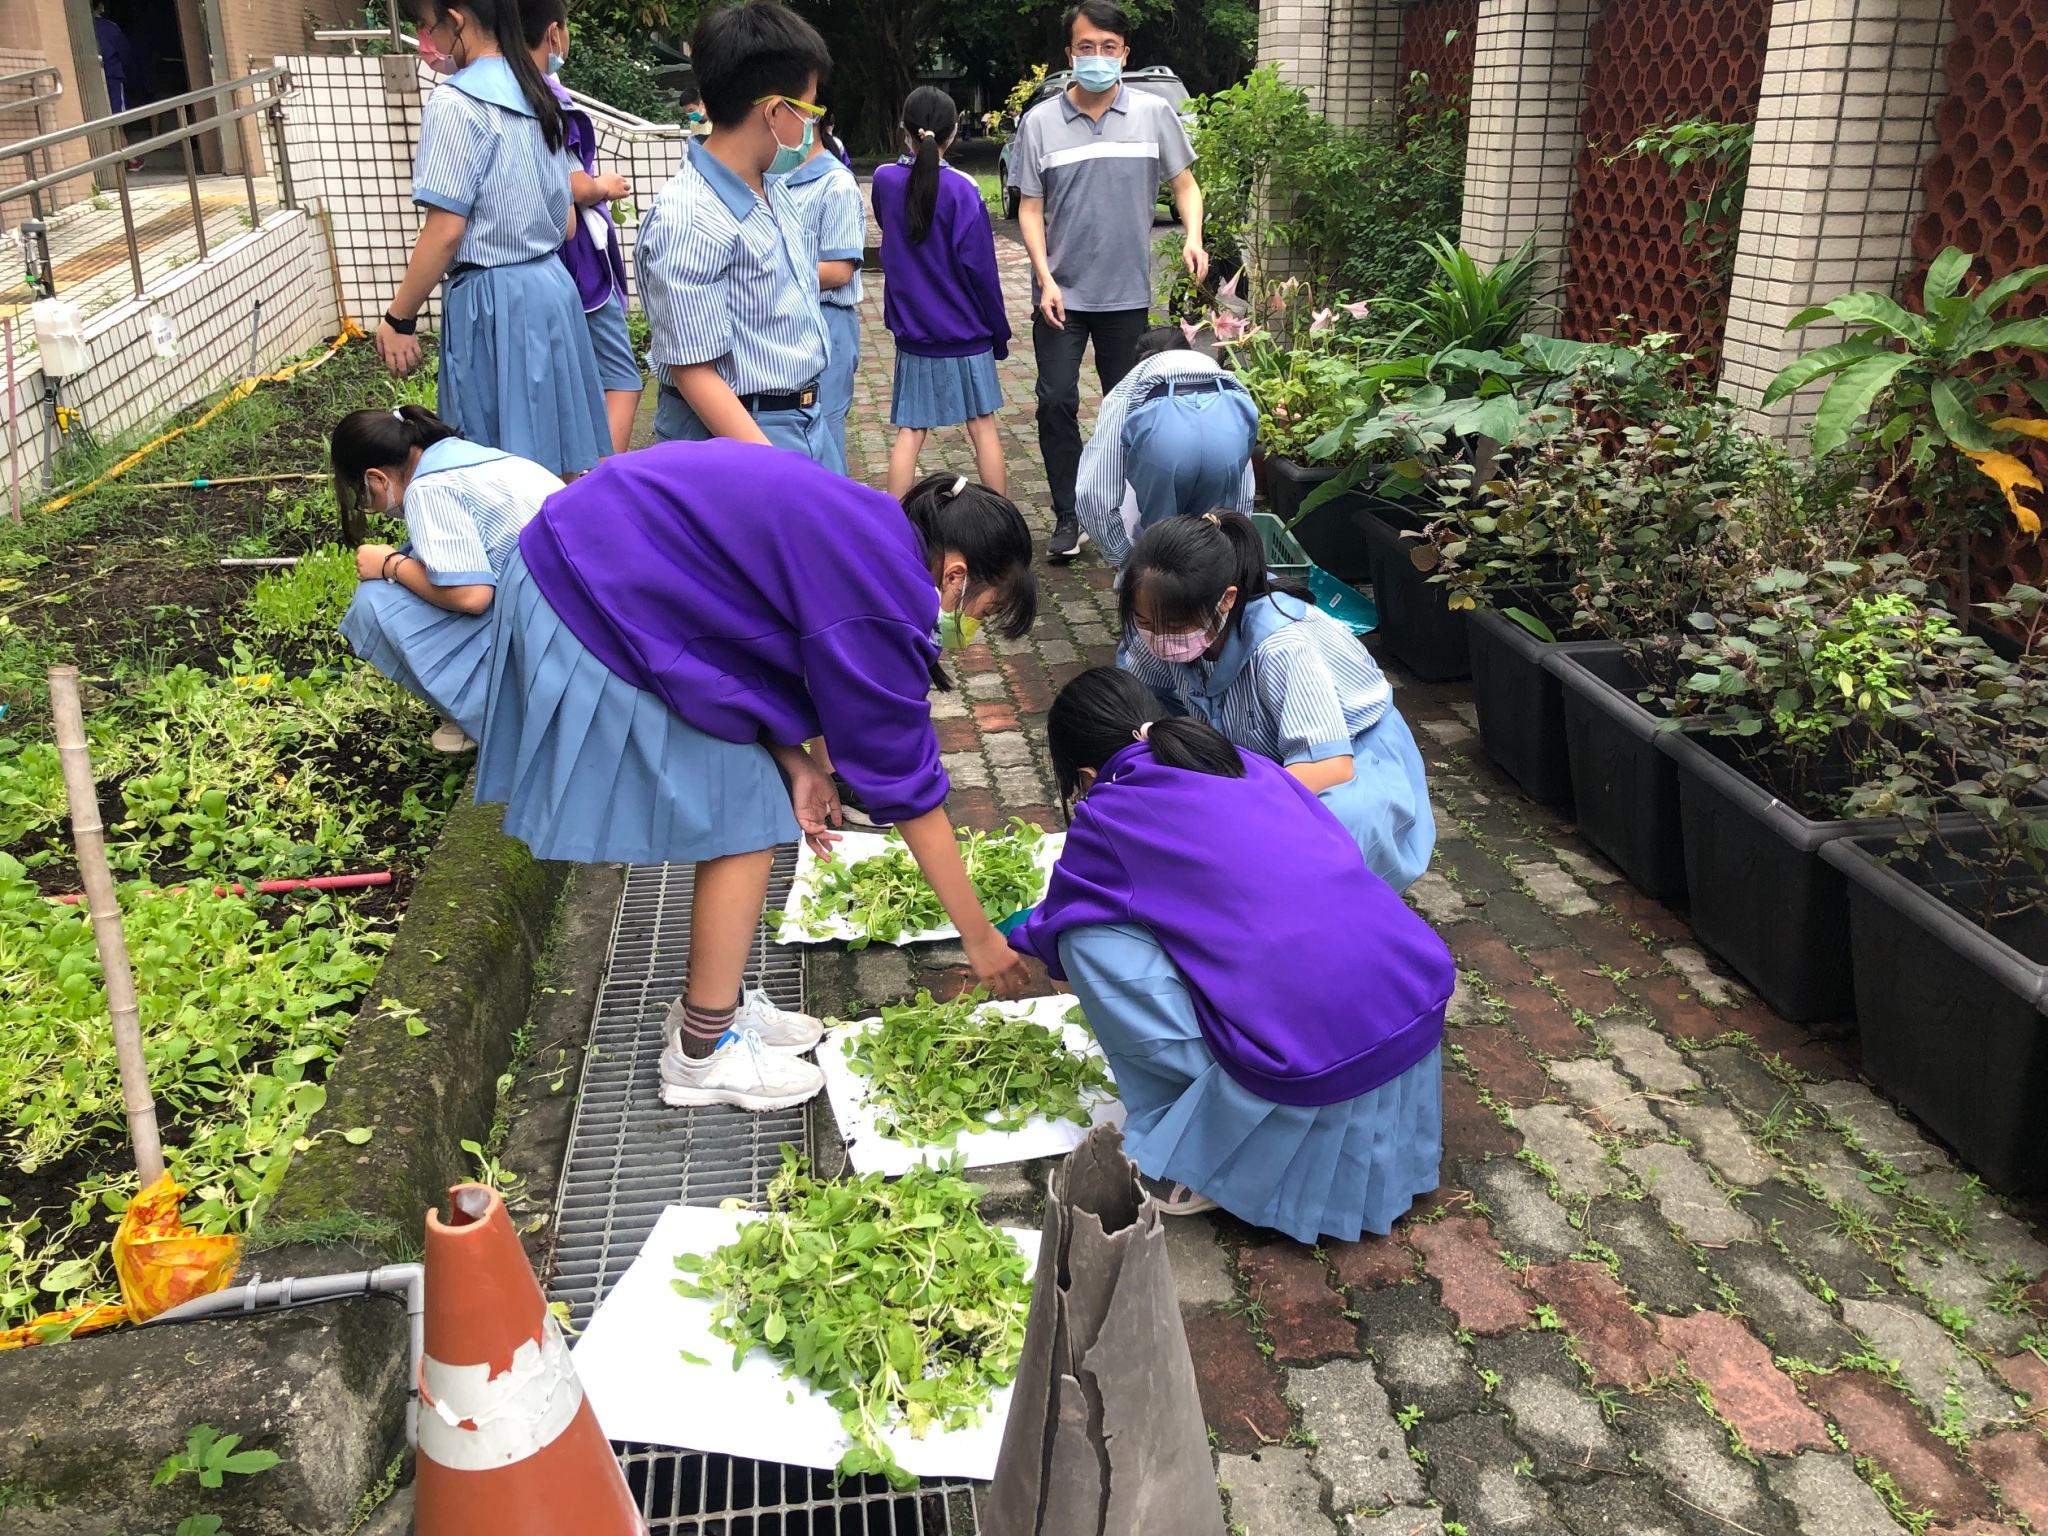 老師在一旁指導同學們進行葉菜種植及採收體驗活動。